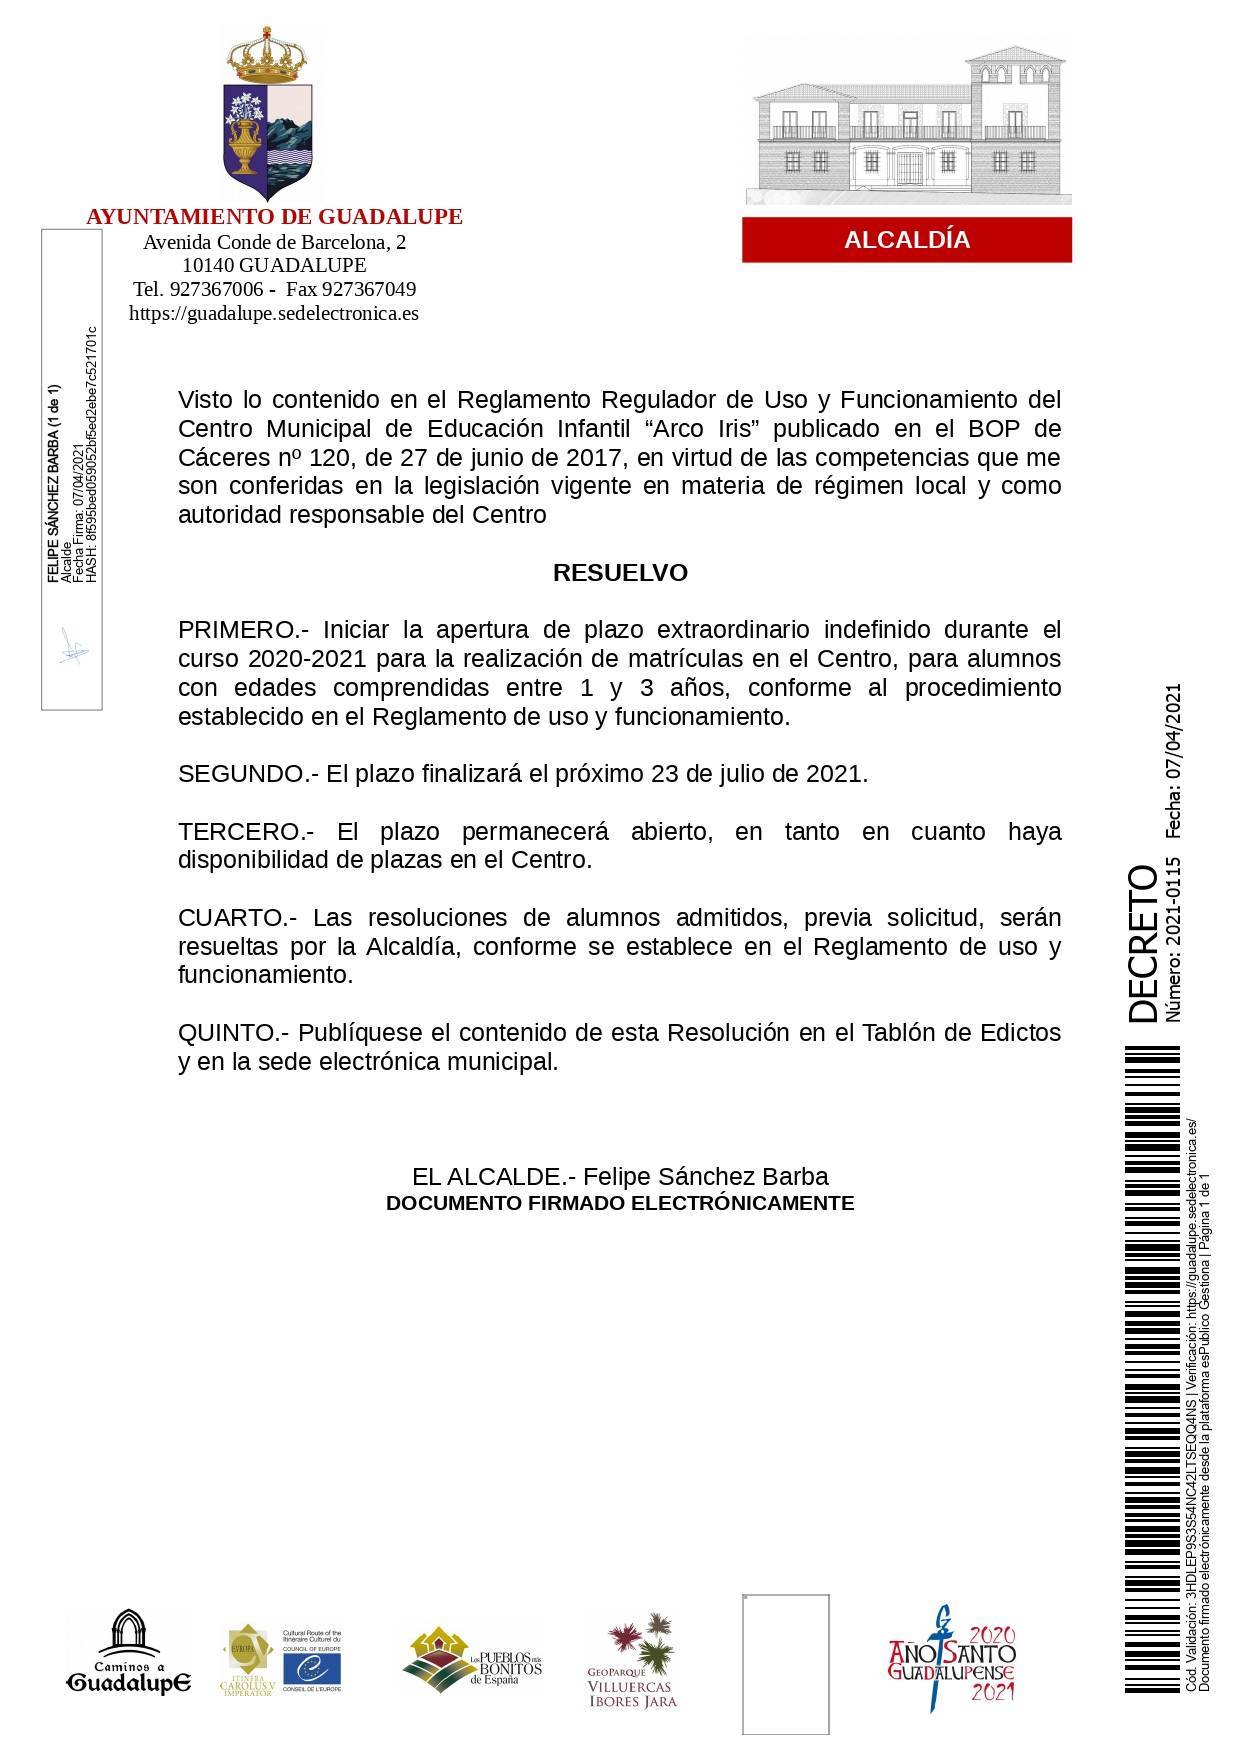 Apertura de plazo extraordinario de la guardería (2021) - Guadalupe (Cáceres)